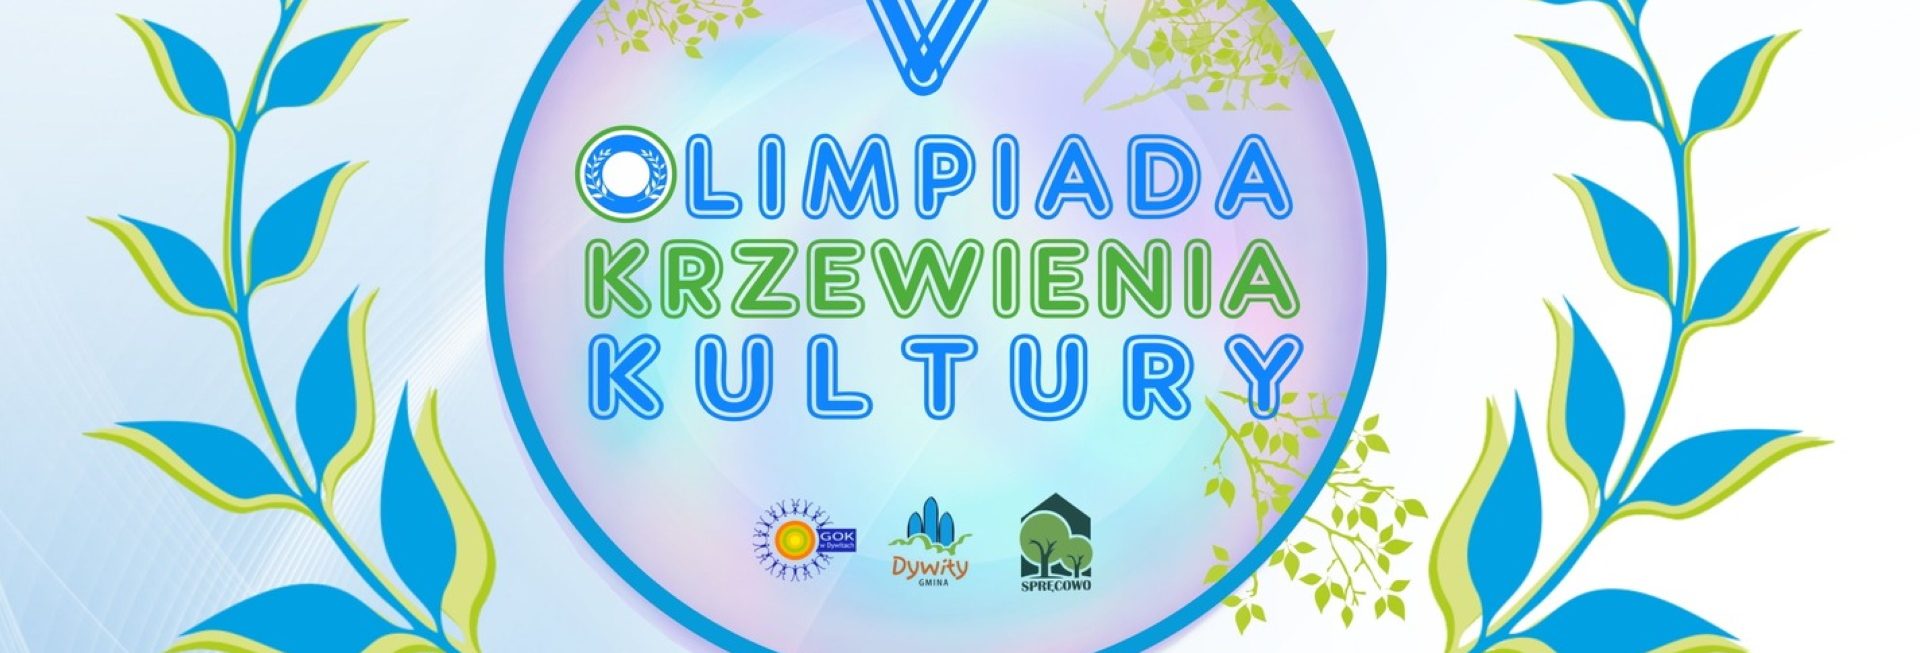 Plakat zapraszający w sobotę 18 maja 2024 r. do miejscowości Spręcowo w gminie Dywity na 5. edycję Olimpiady Krzewienia Kultury Spręcowo 2024.